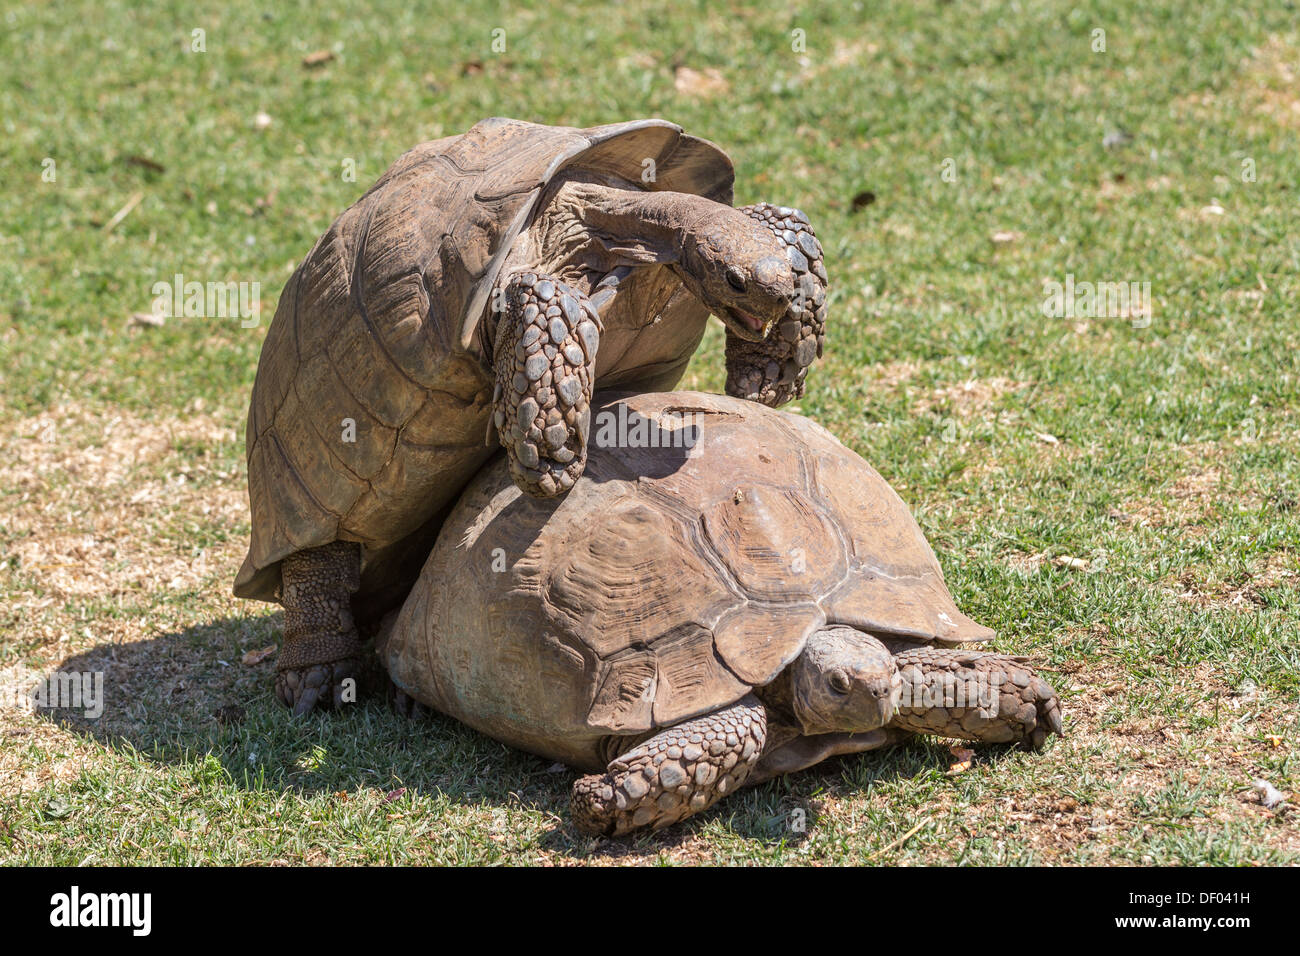 Un mâle Sulcata tortue escalade lentement sur le dessus de sa compagne Banque D'Images